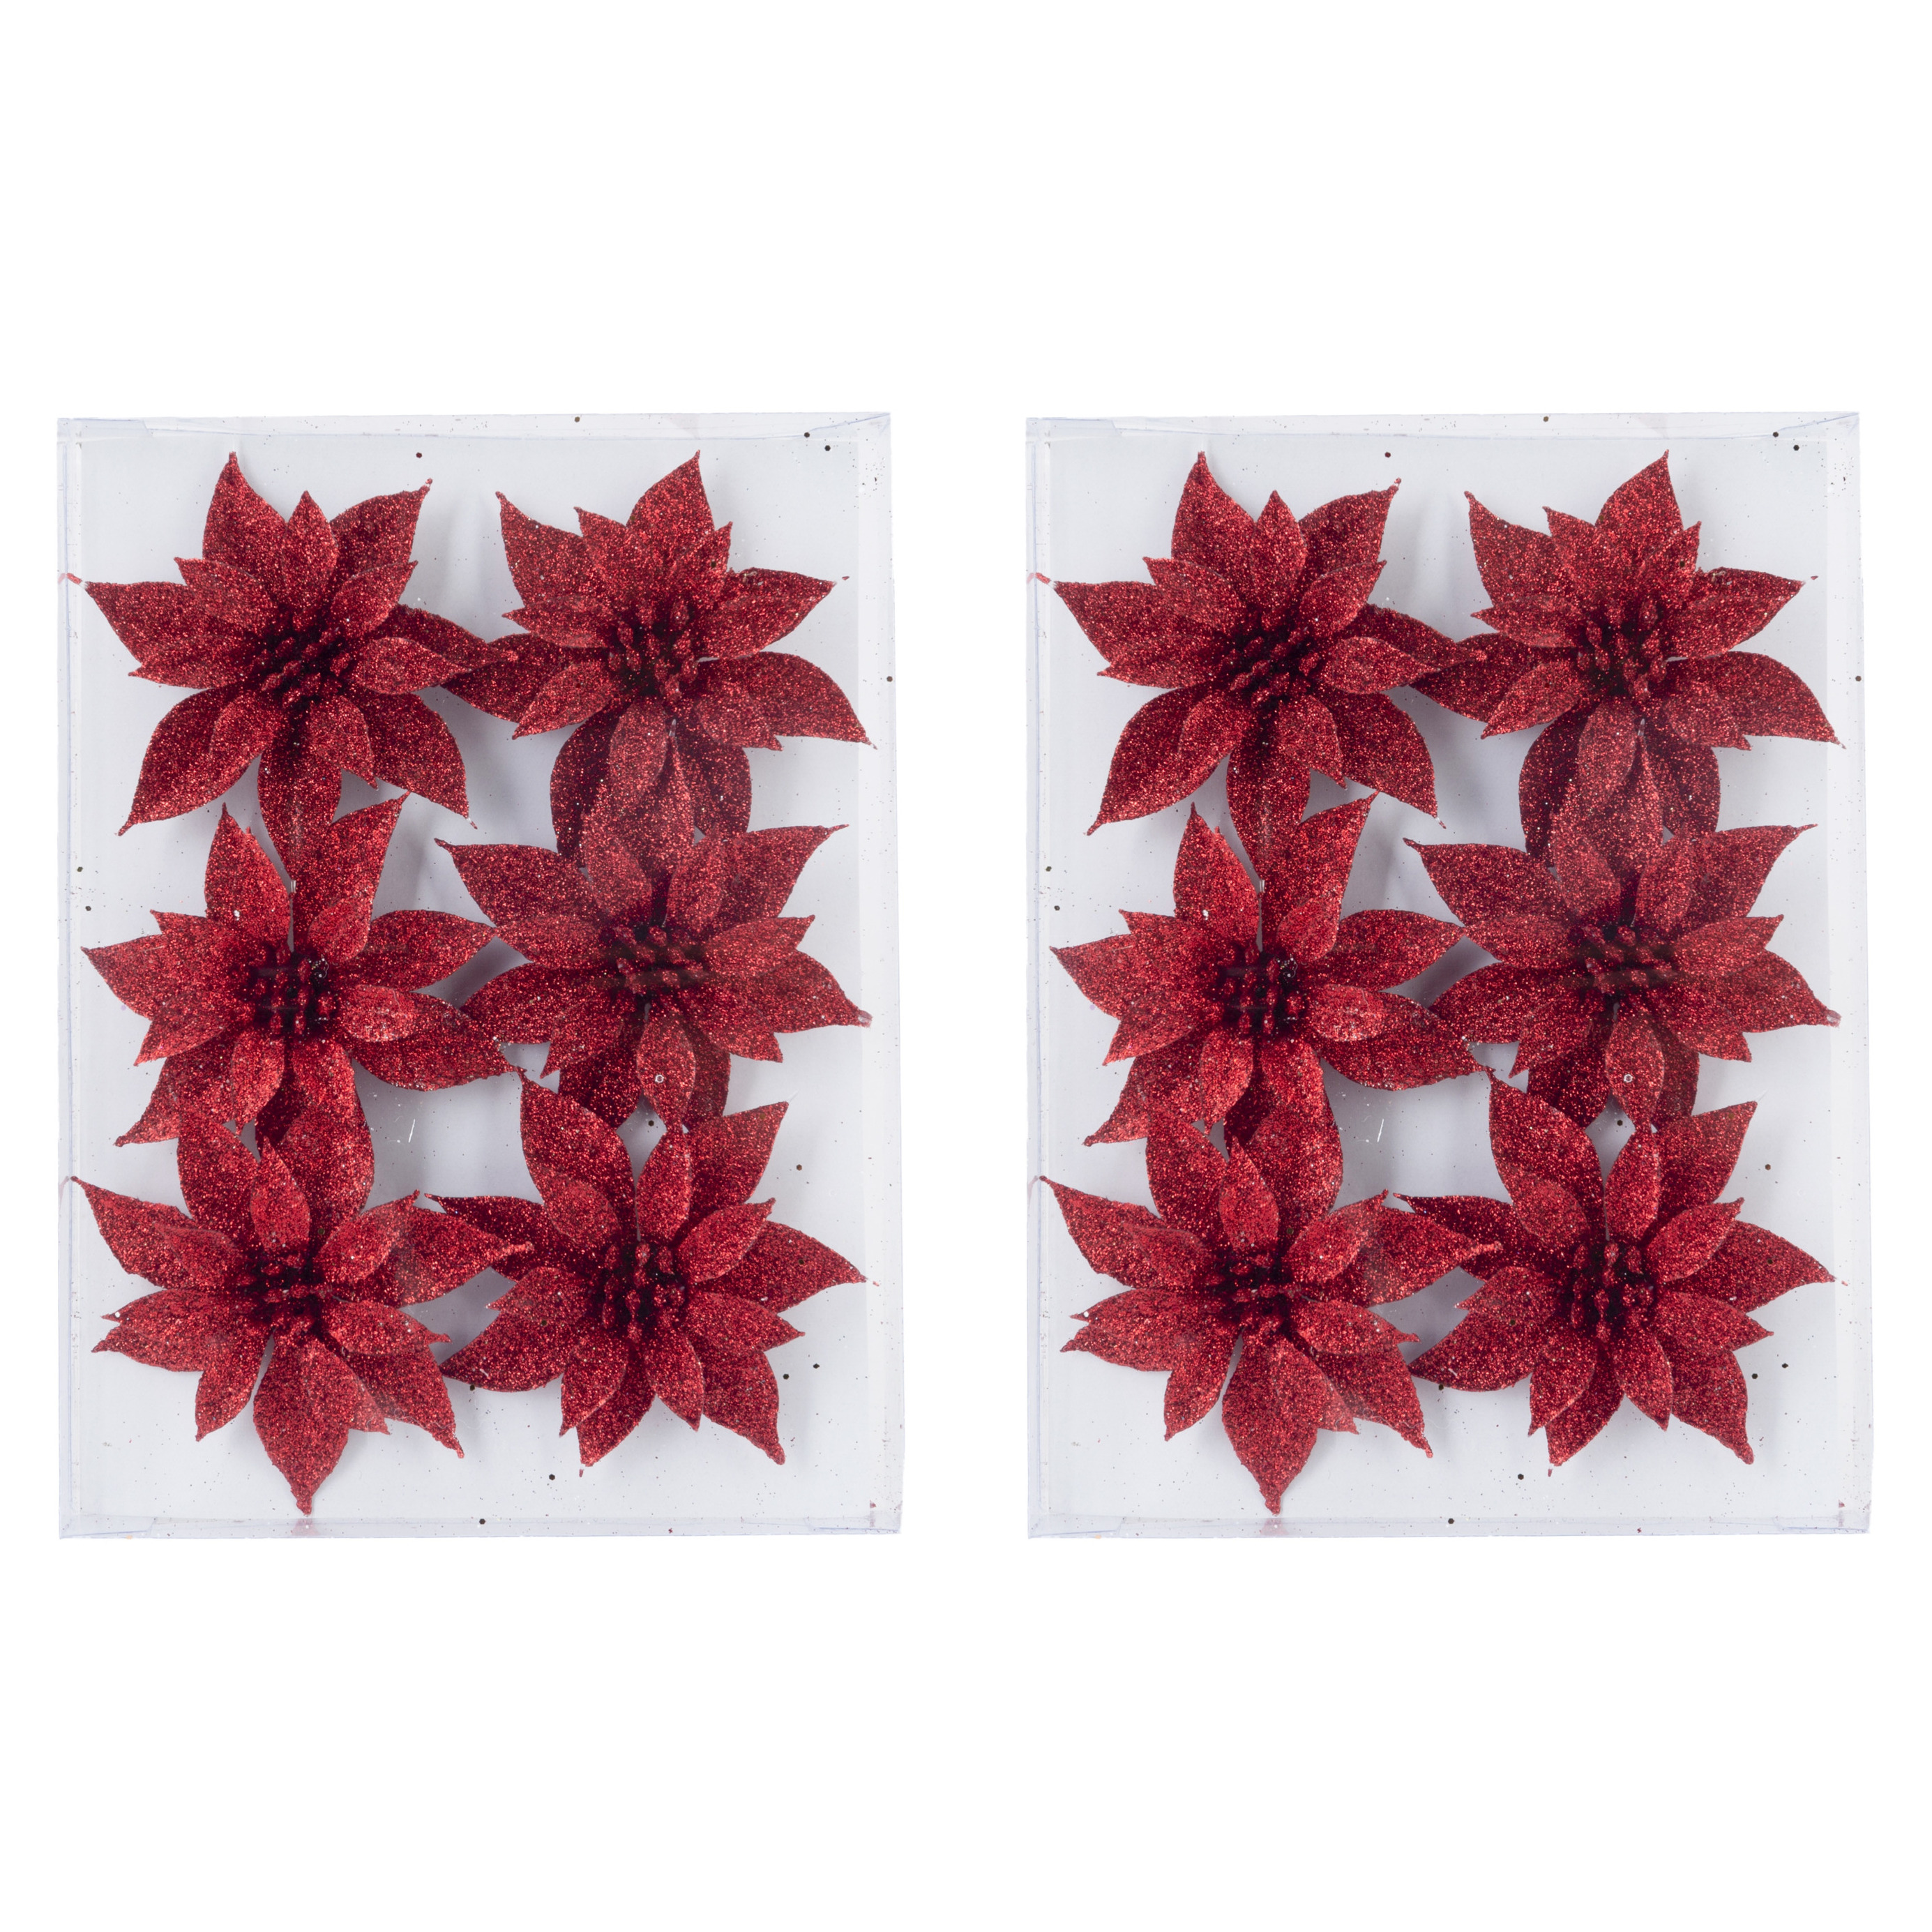 18x stuks decoratie bloemen rozen rood glitter op ijzerdraad 8 cm